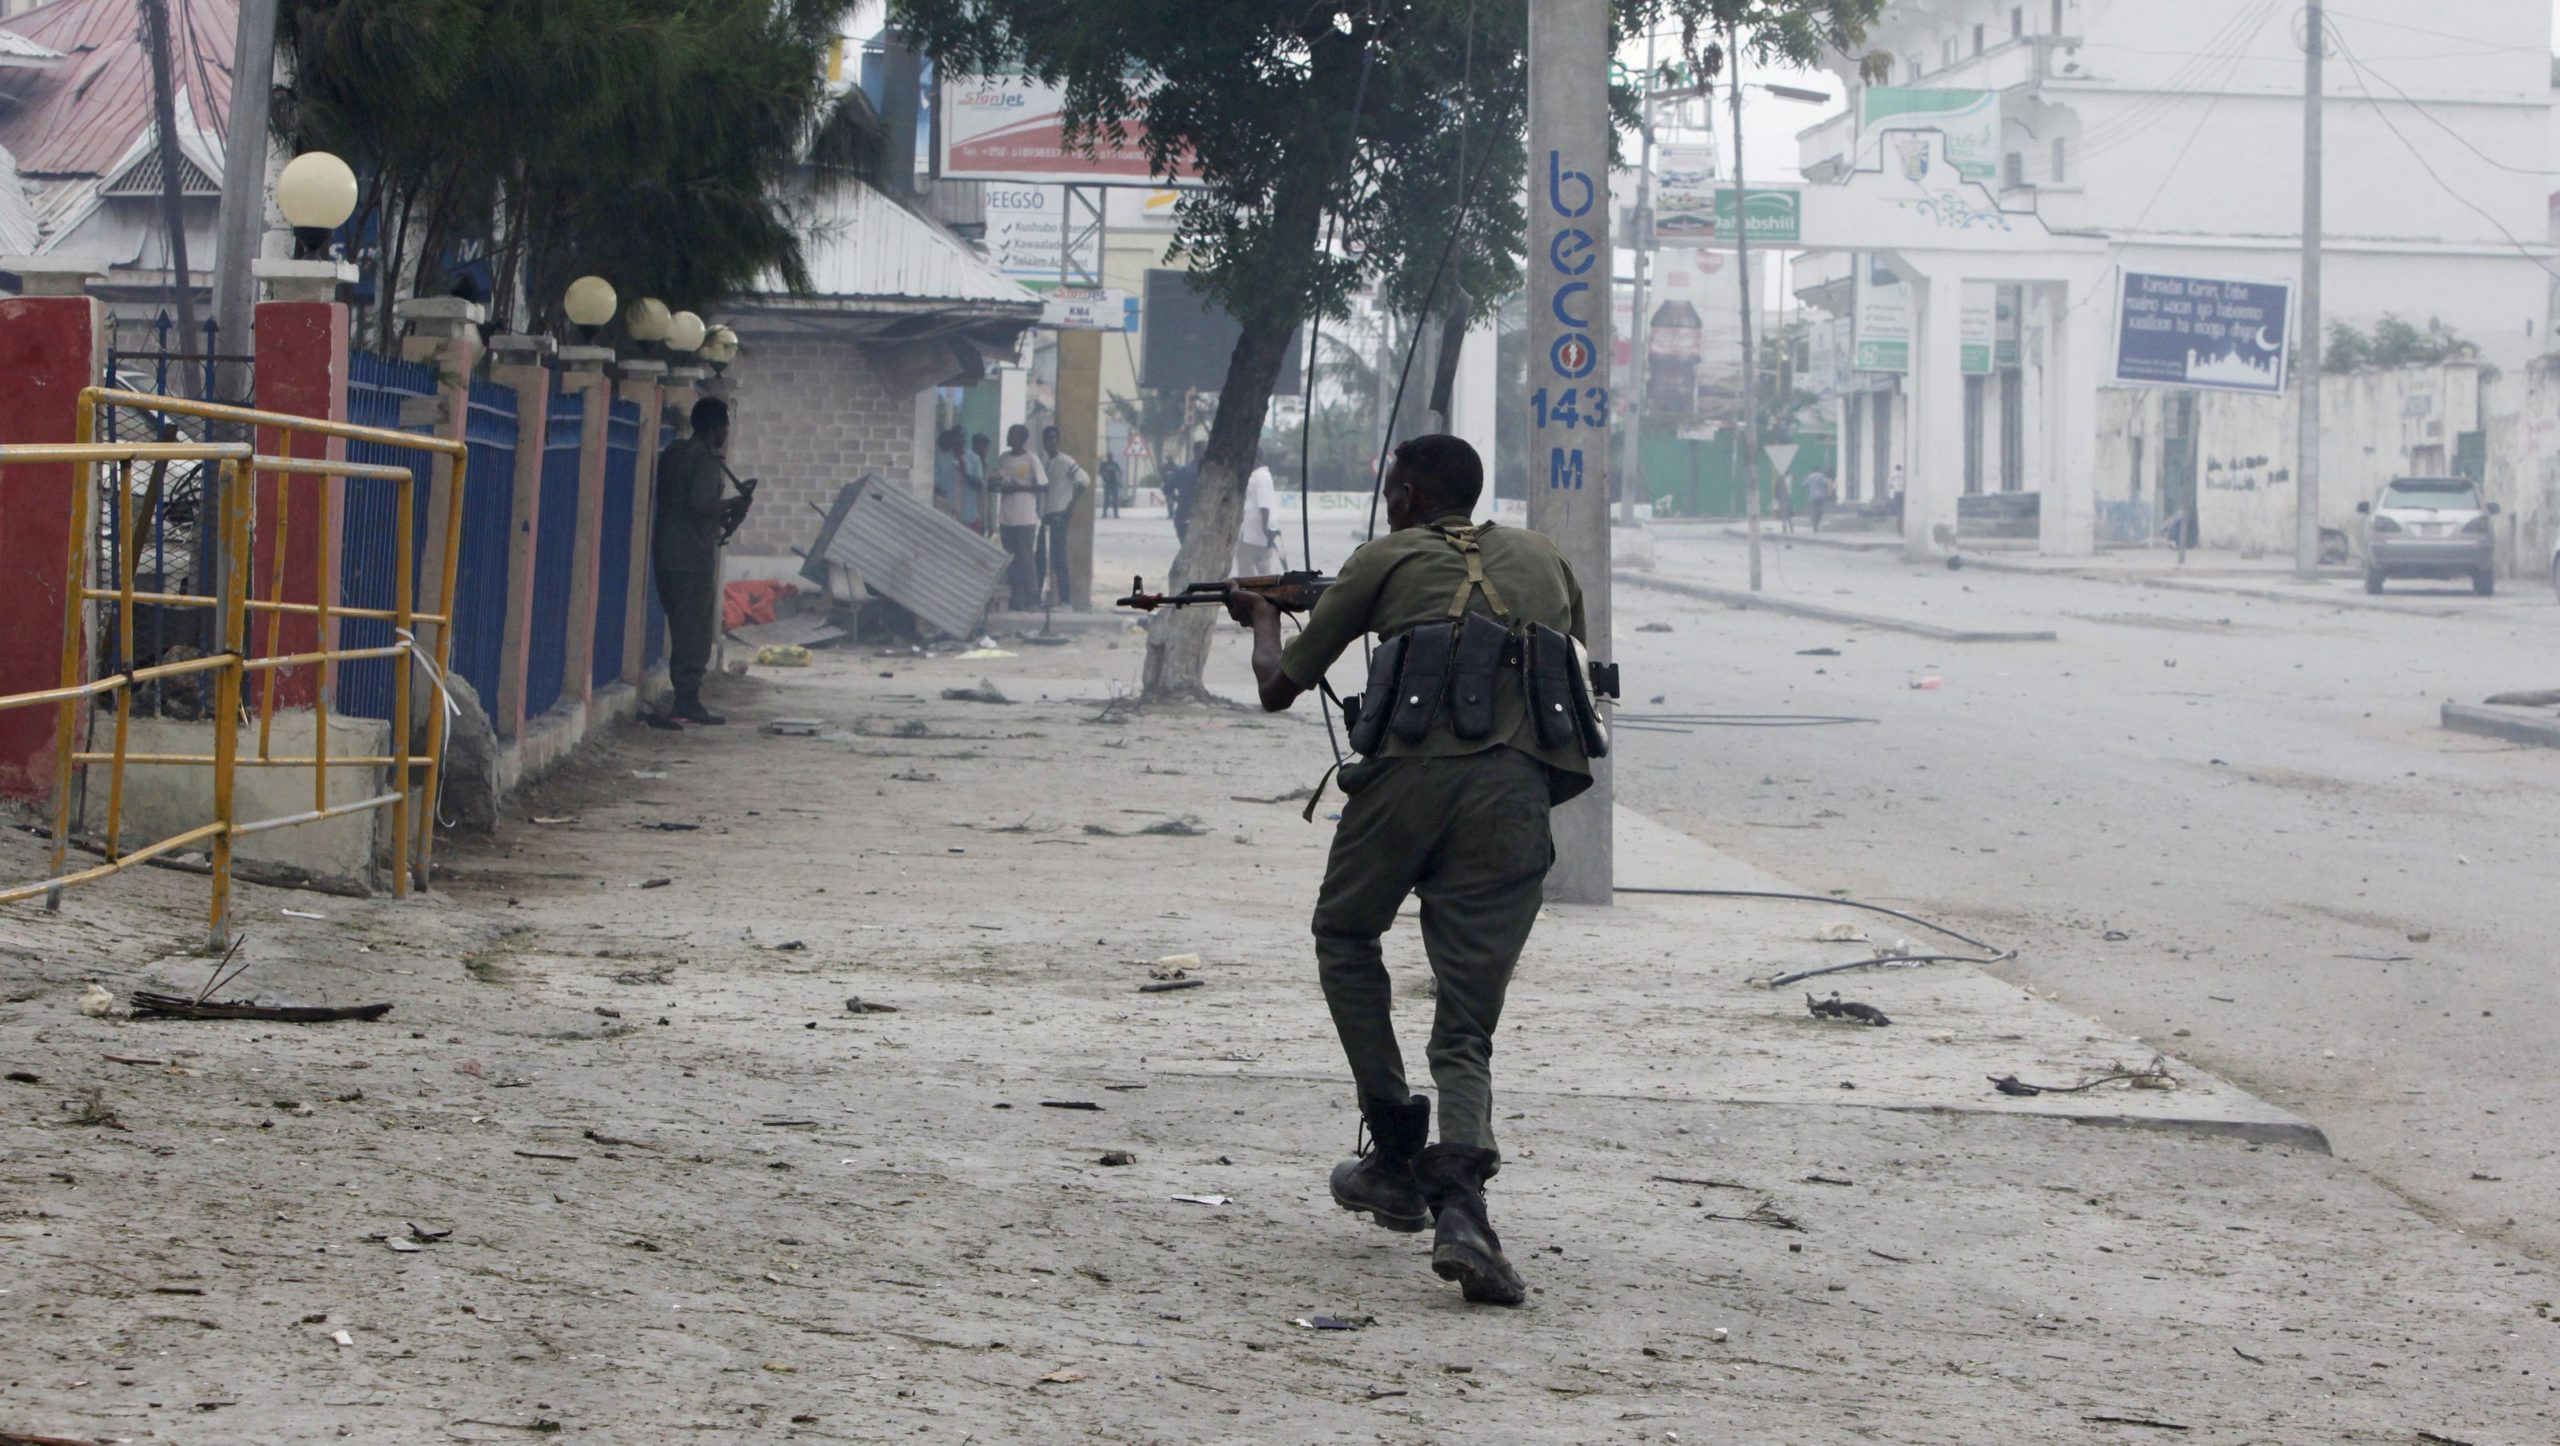 , ضابط متمرد يقتل رجل أعمال ومواطنيين وسط الصومال